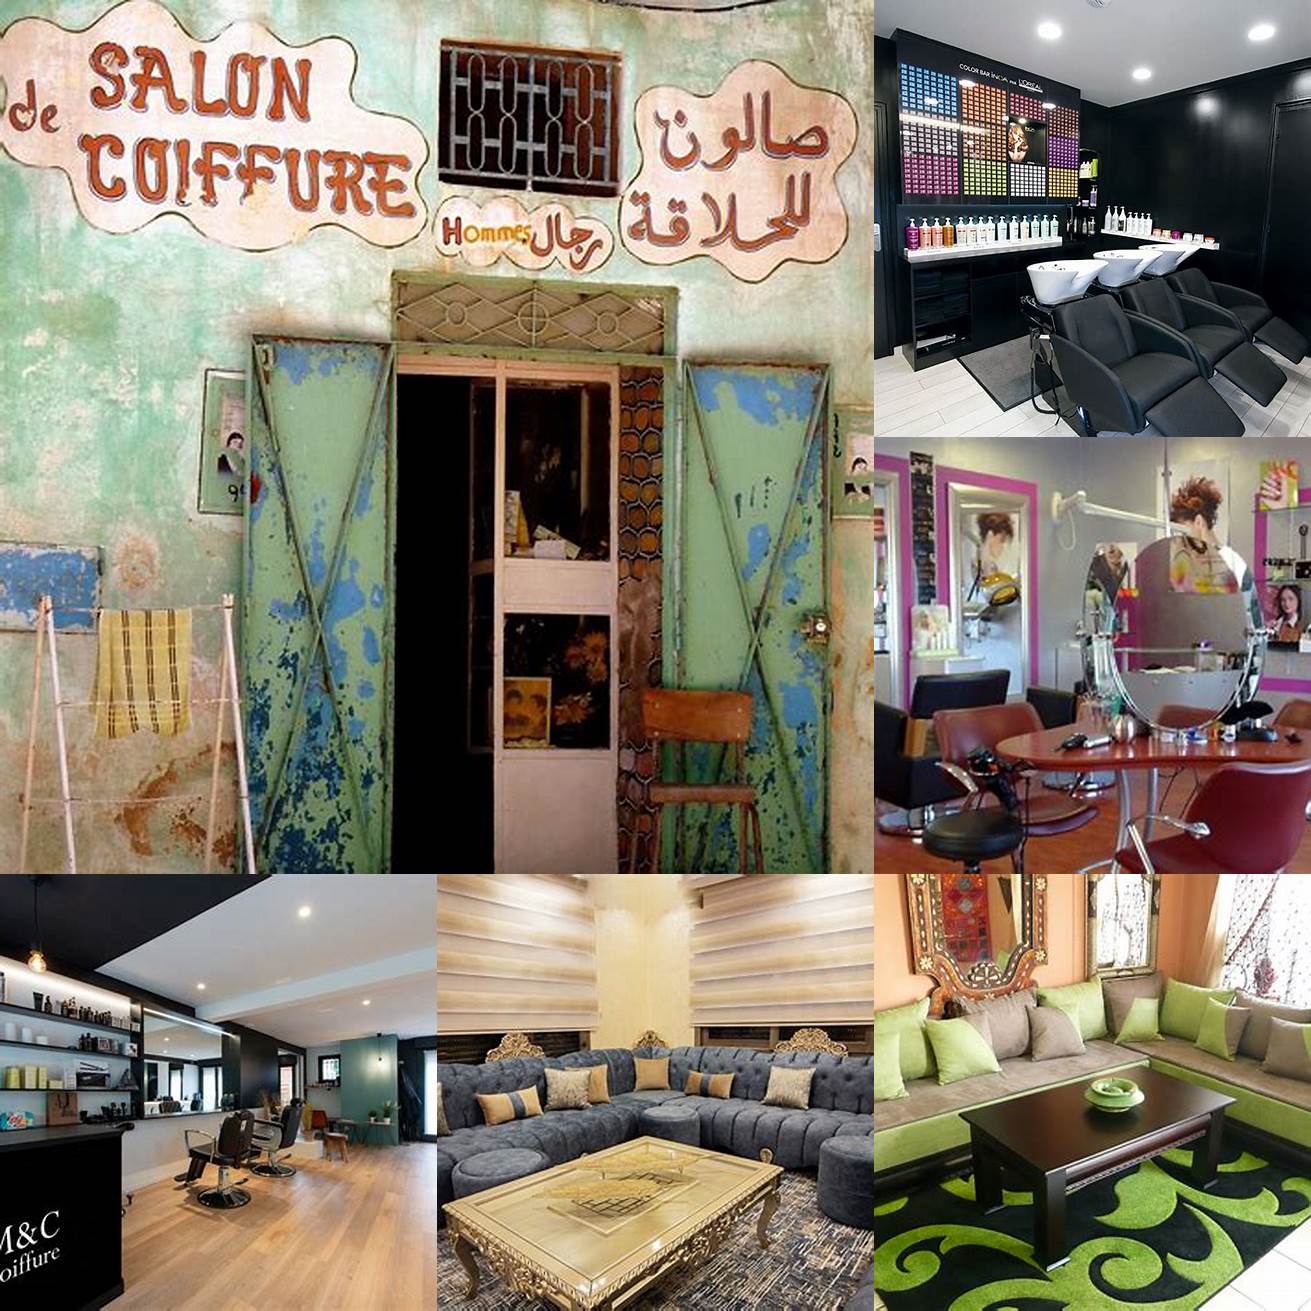 Salon de coiffure Marocain